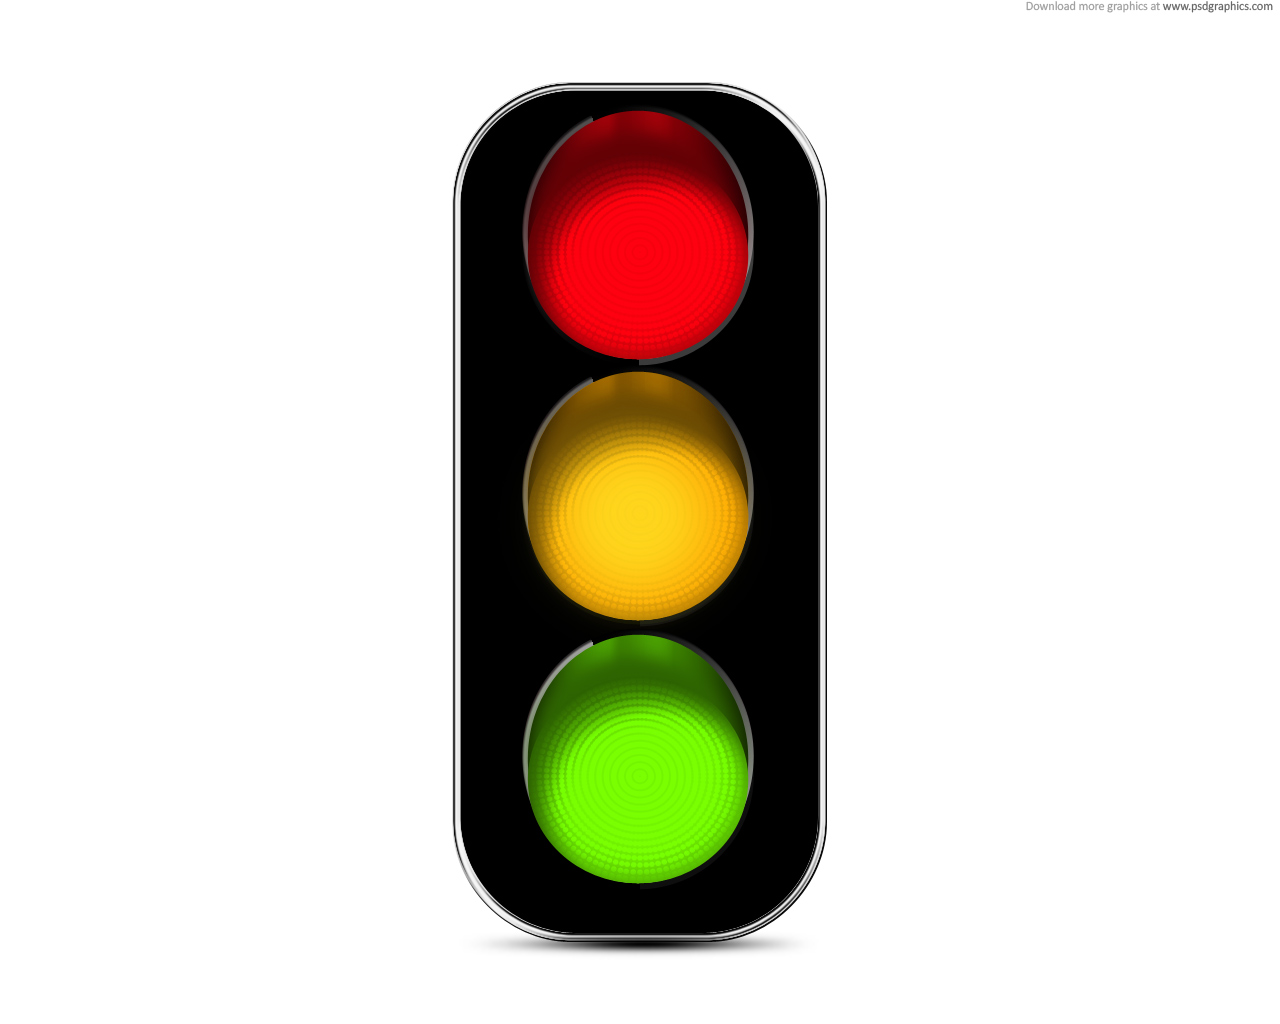 Traffic Light Clipart #5 - Clip Art Pin